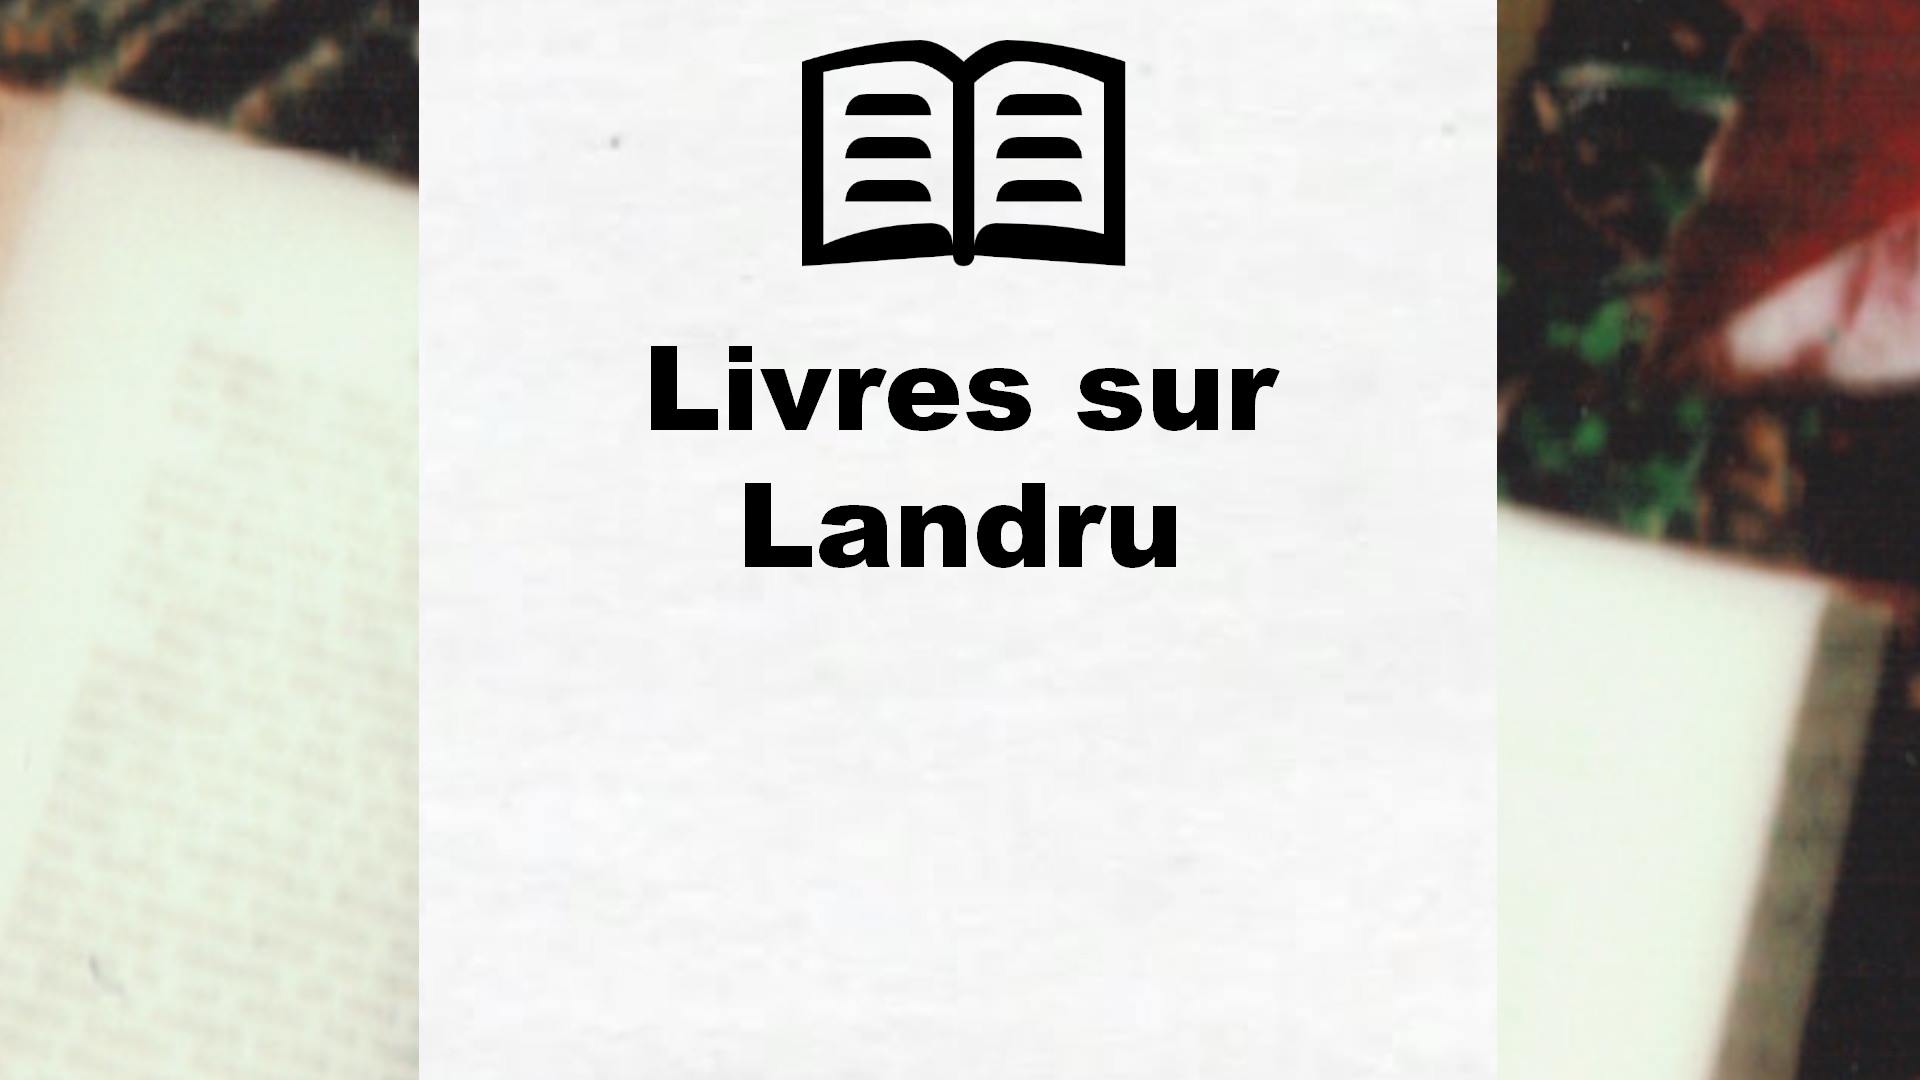 Livres sur Landru